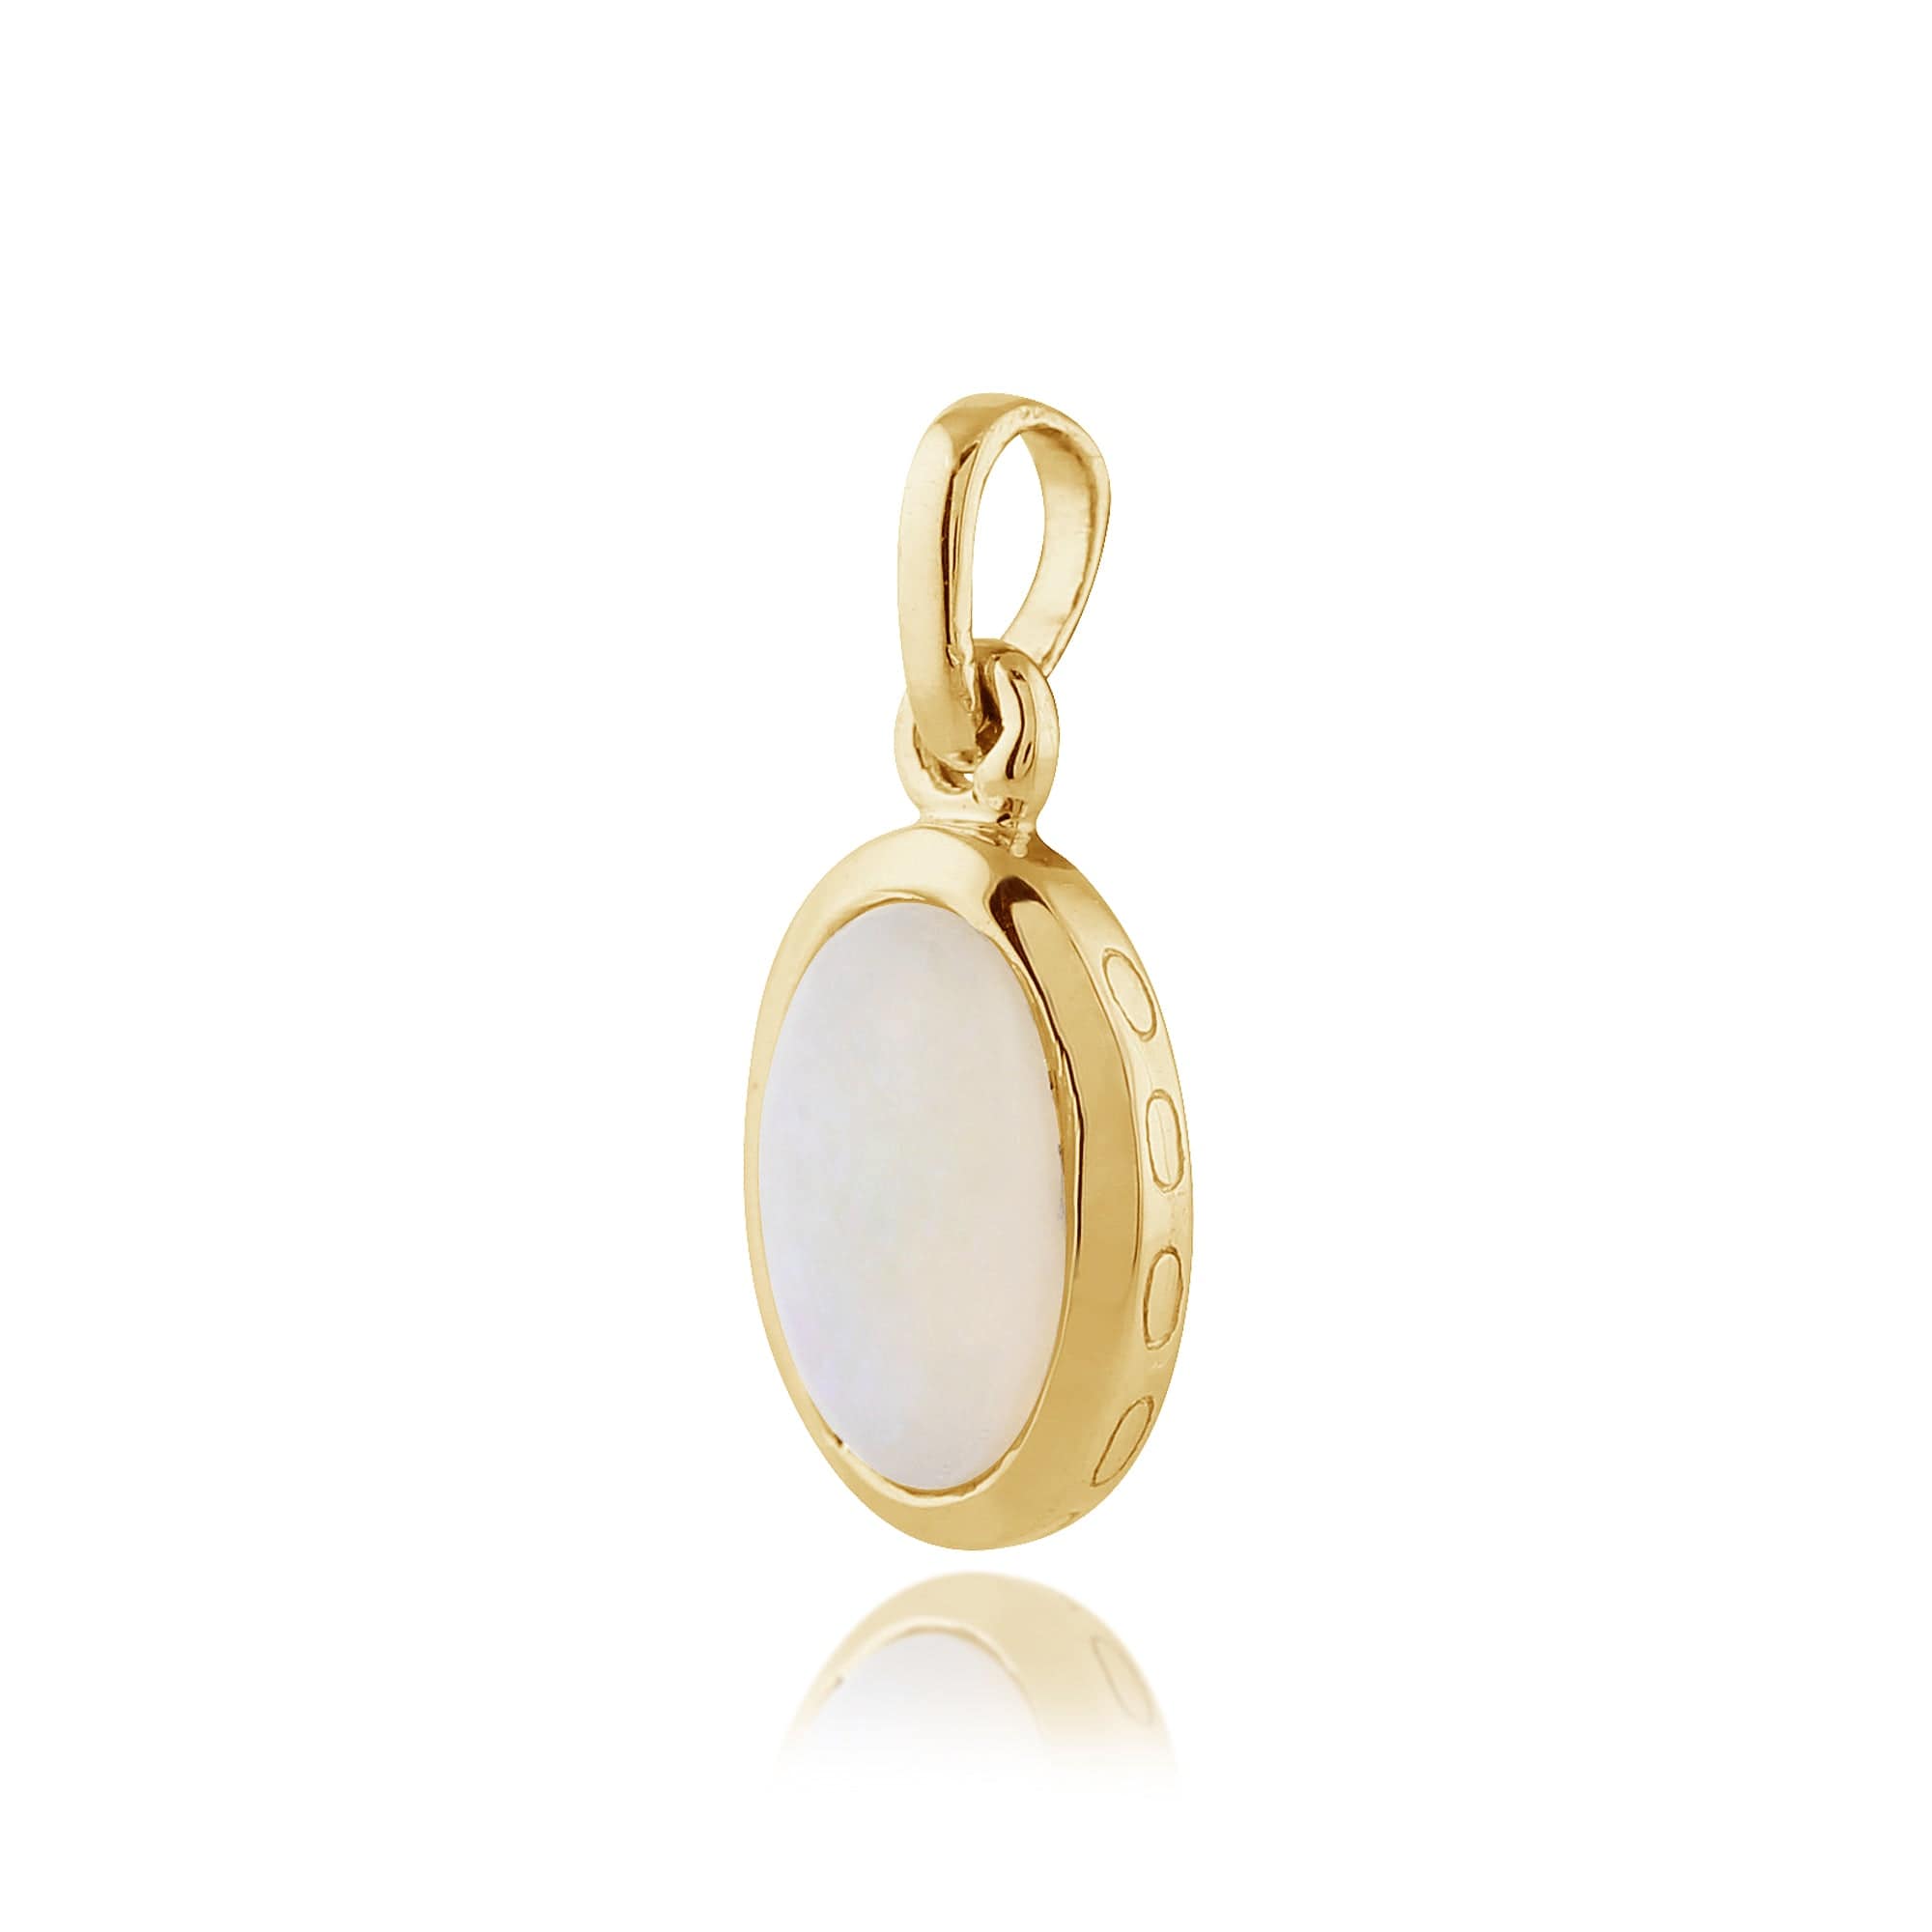 135E1203019-135P1566019 Classic Oval Opal Single Stone Bezel Drop Earrings & Pendant Set in 9ct Yellow Gold 4